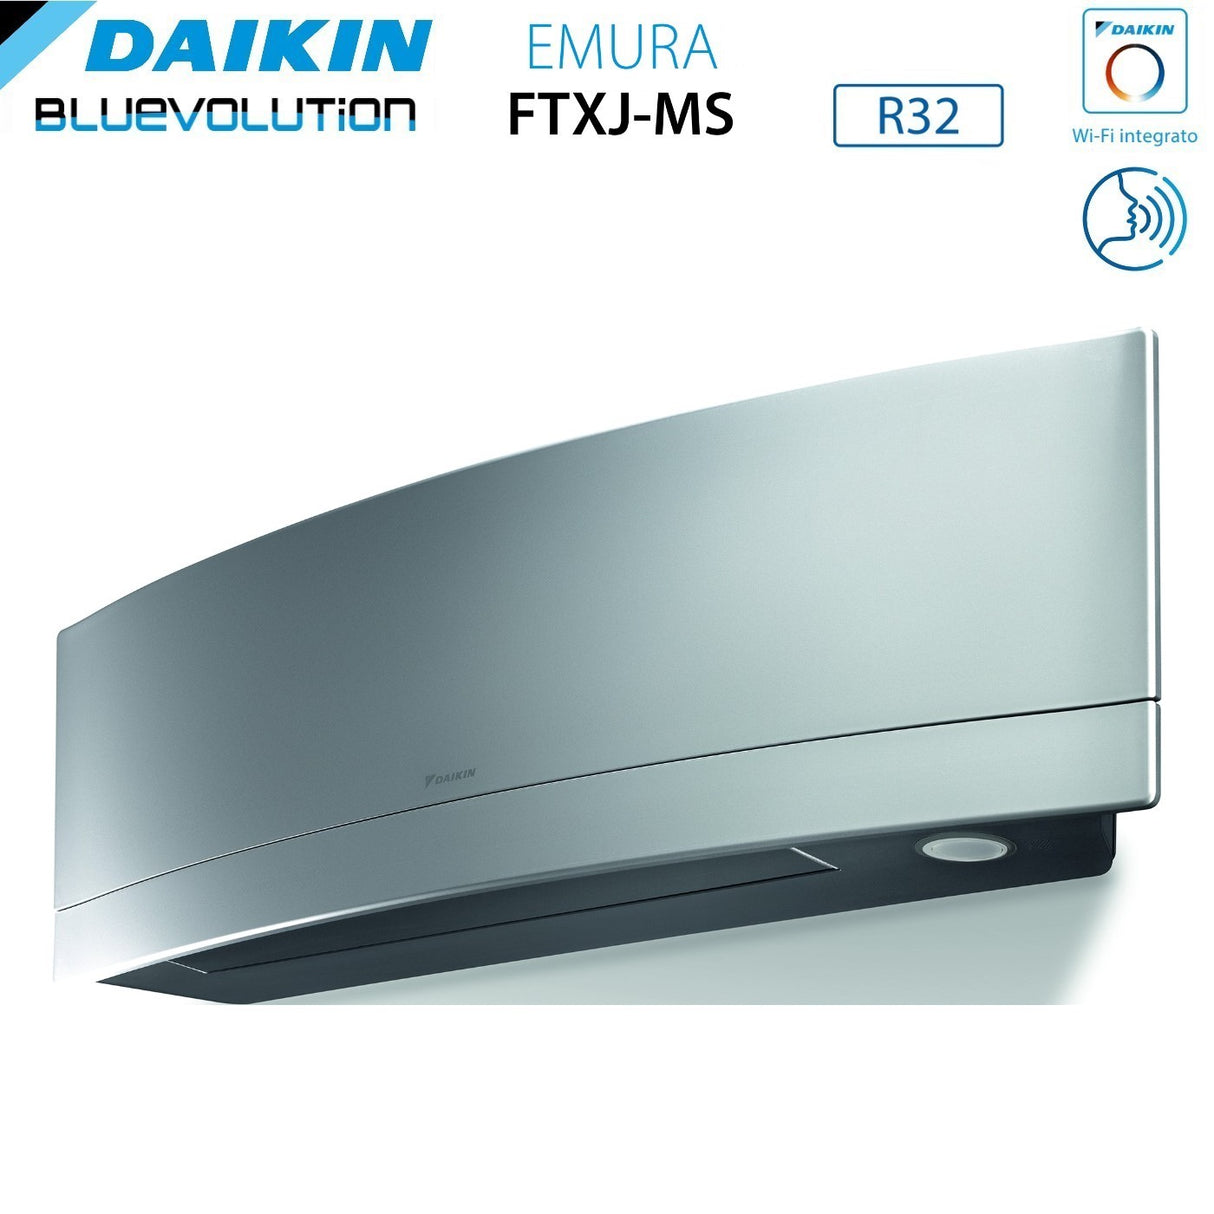 immagine-3-daikin-climatizzatore-condizionatore-daikin-bluevolution-inverter-serie-emura-silver-12000-btu-ftxj35ms-r-32-wi-fi-integrato-classe-a-garanzia-italiana-ean-8059657002853